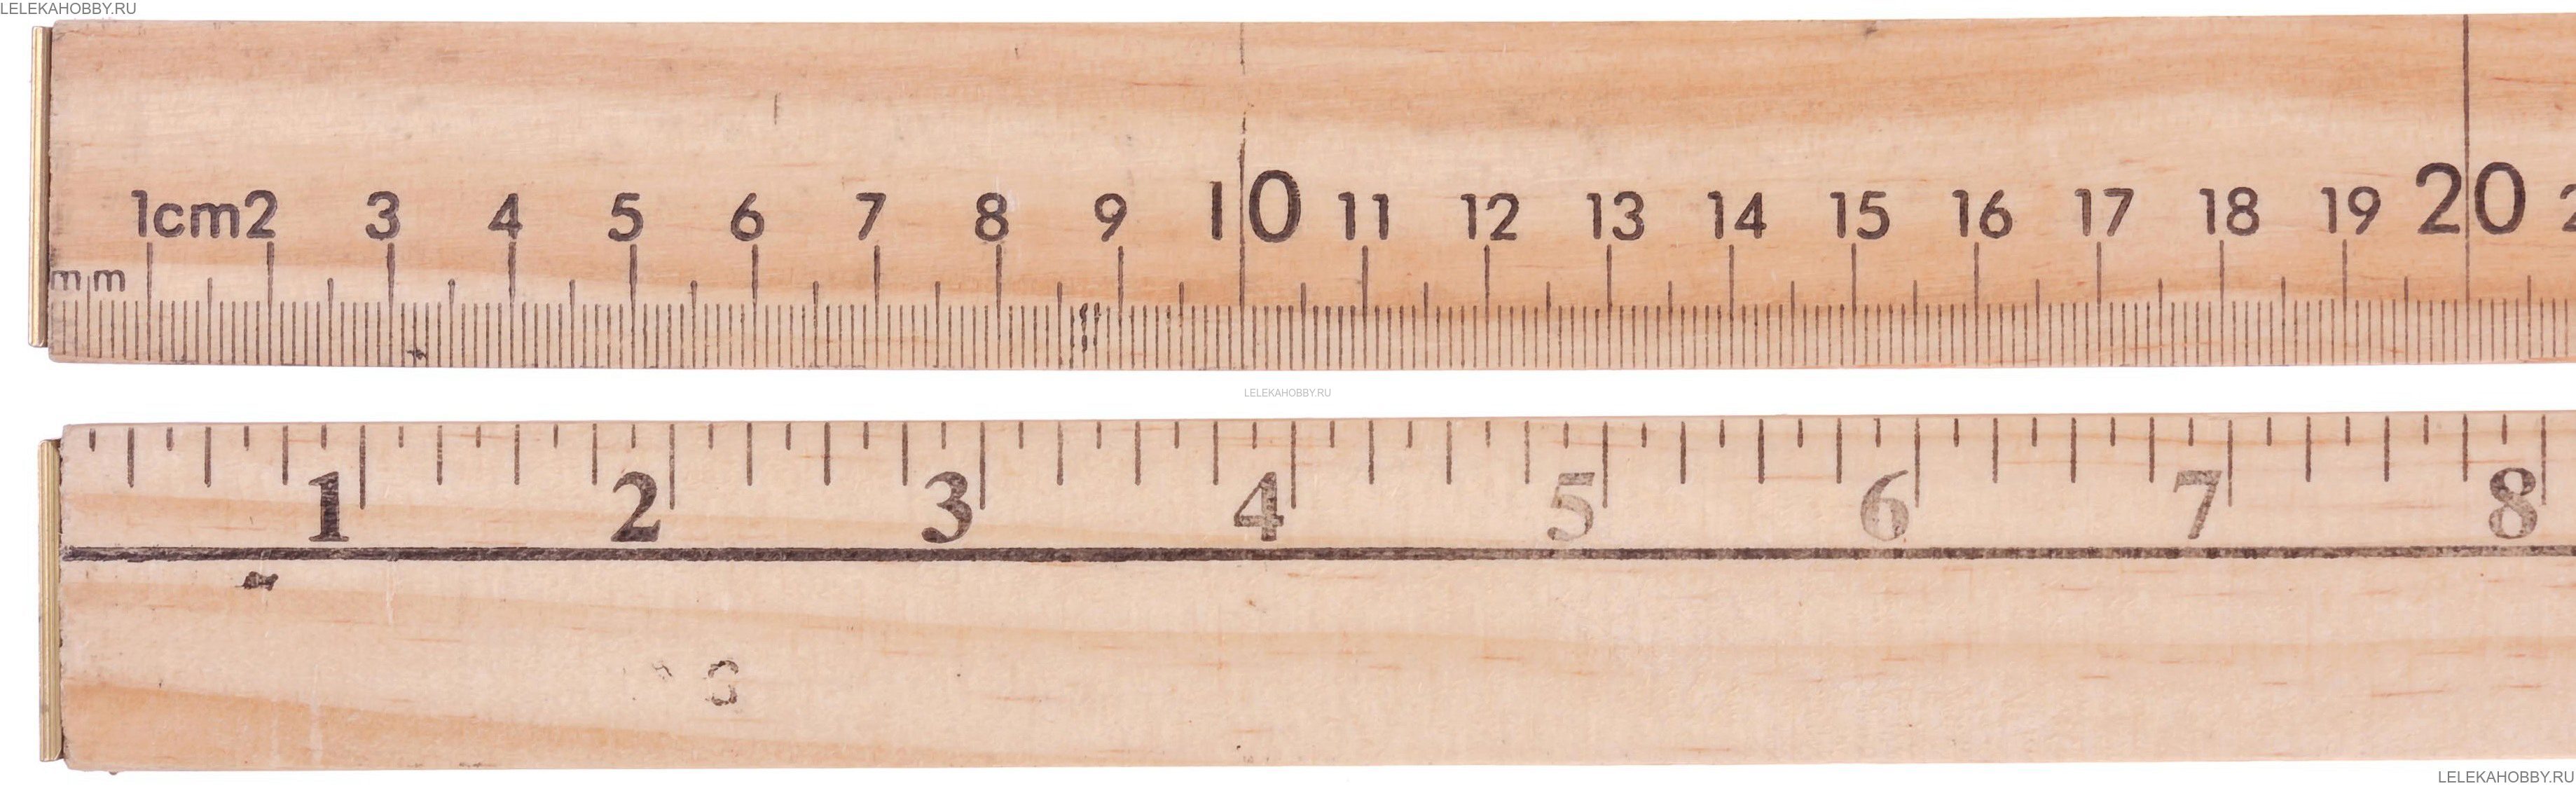 Маша измерила длину и ширину своего письменного стола в сантиметрах